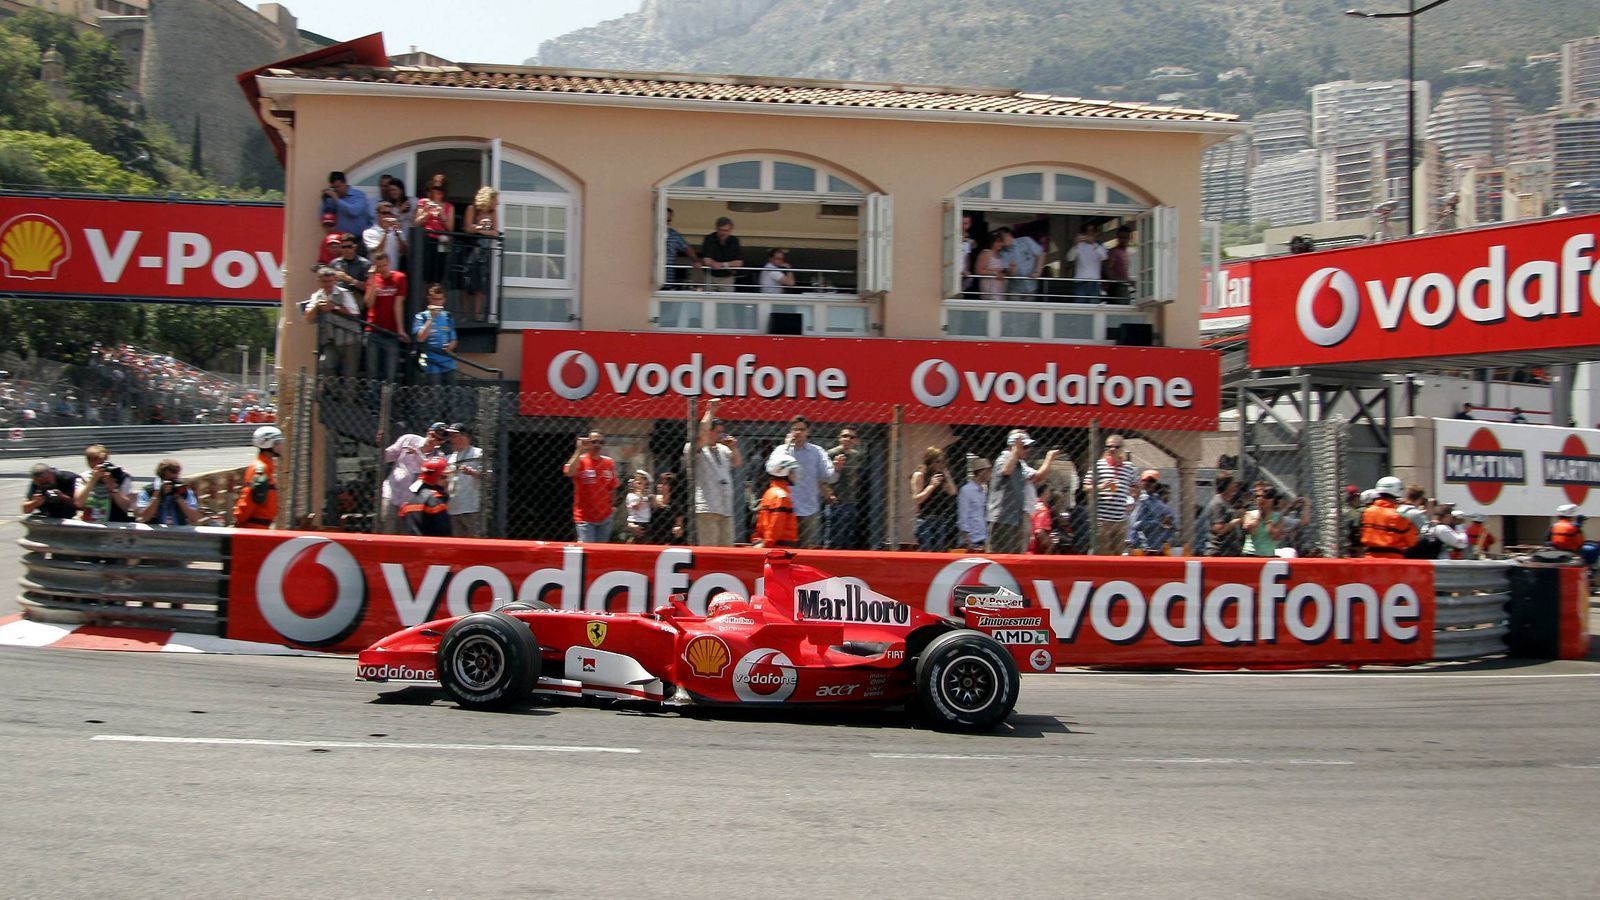 
                <strong>2006: Schumachers Parkaktion</strong><br>
                Es gibt Dinge, die im Gedächtnis bleiben, die fest zur Geschichte der Formel 1 gehören und an die sich die Fans auch Jahre später erinnern. Wie die Parkaktion von Michael Schumacher zum Beispiel. Im Qualifying zum Monaco-GP 2006 fuhr der damalige Ferrari-Star die schnellste Zeit. Wenige Sekunden vor Ende des Qualifyings ließ er eingangs der engen Rascasse-Kurve das Auto so stehen, dass gelbe Flaggen geschwenkt werden mussten. Dadurch konnten sich einige hinter ihm fahrende Piloten nicht verbessern. Die Rennleitung benötigte acht Stunden für ein Urteil. Das fiel dann hart aus: Schumachers Verhalten wurde als vorsätzlich und grob unsportlich gewertet; er wurde von der Pole Position auf den letzten Startplatz zurückversetzt.
              